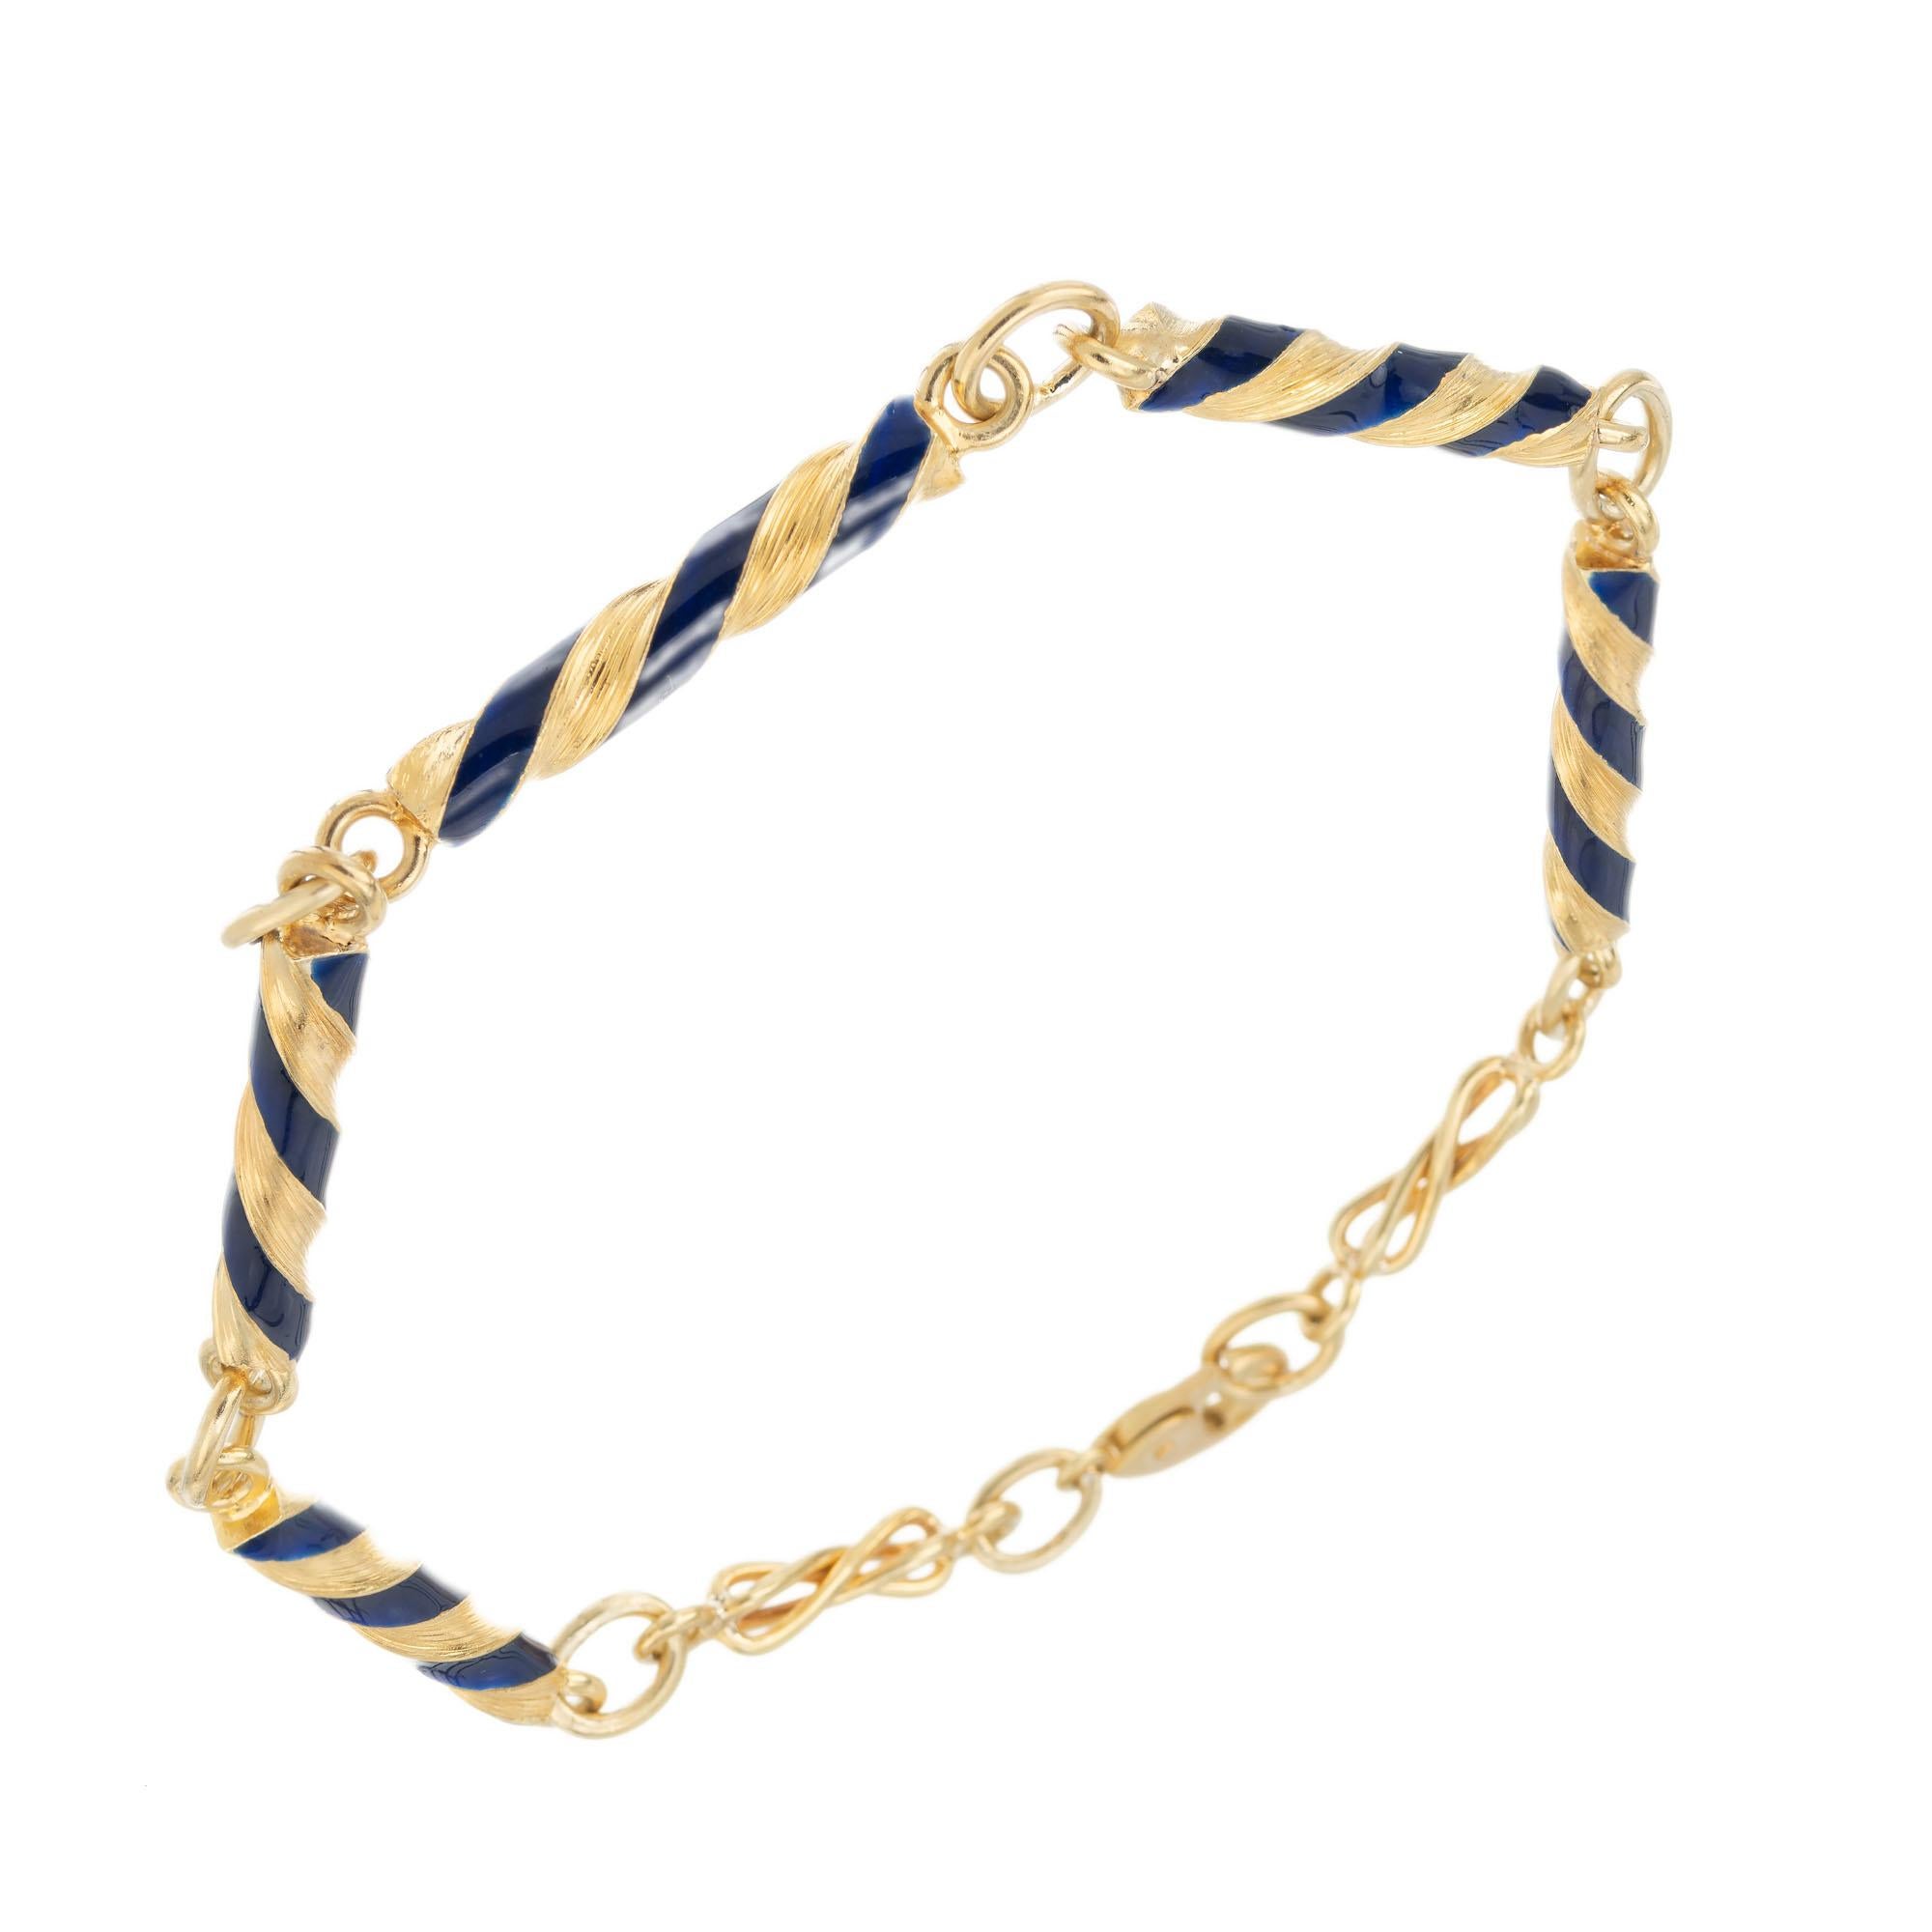 Bracelet de cinq sections en émail bleu et or jaune 18k.

Émail bleu
Or jaune 18k 
Estampillé : K18
10,0 grammes
Bracelet : 8 pouces
Largeur : 3.6 mm
Profondeur ou épaisseur : 3.6 mm
